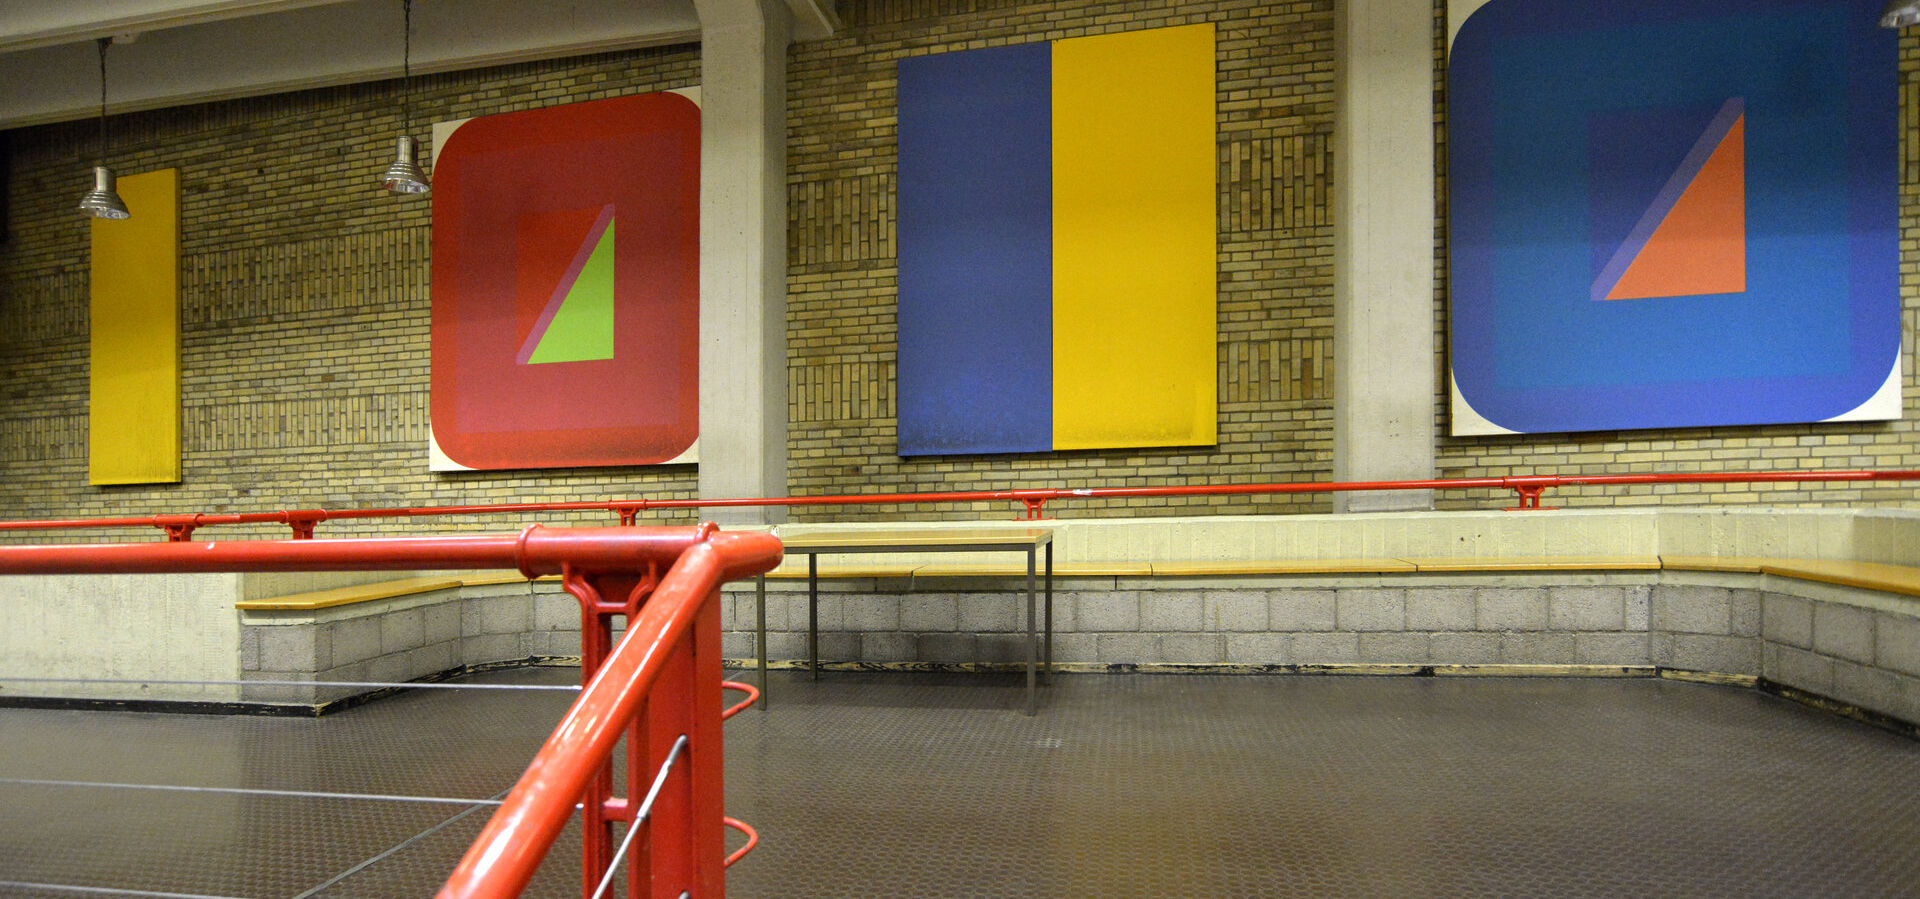 Kunstwerk auf dem Campus der Technischen Universität Berlin: Metro-Serie im Mathematikgebäude